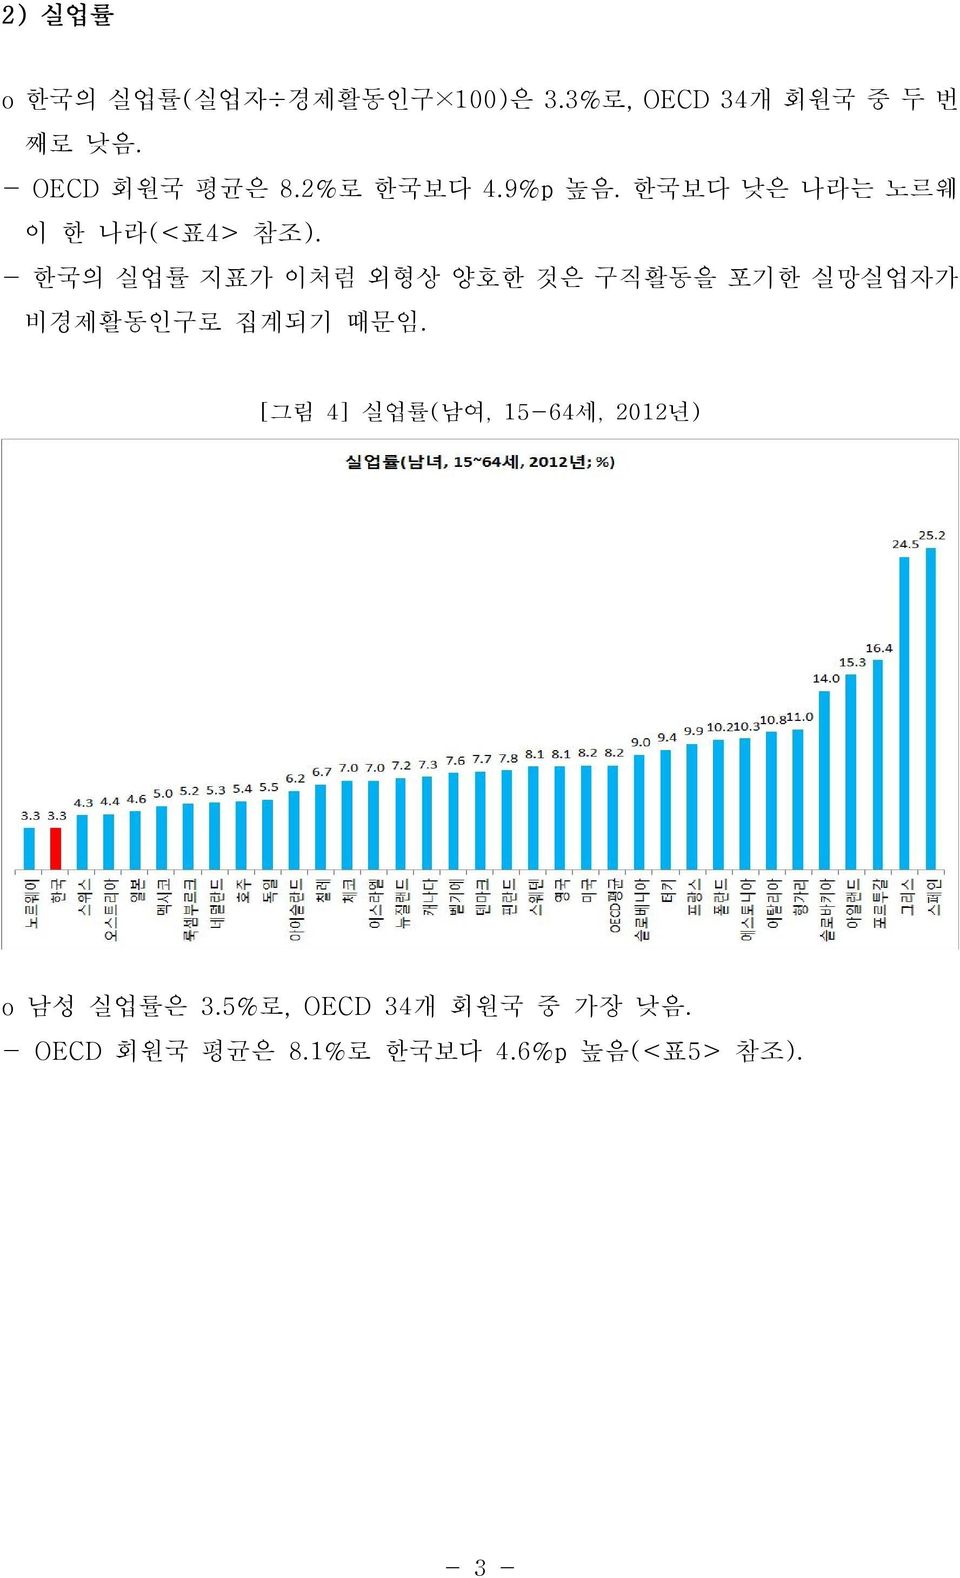 - 한국의 실업률 지표가 이처럼 외형상 양호한 것은 구직활동을 포기한 실망실업자가 비경제활동인구로 집계되기 때문임.